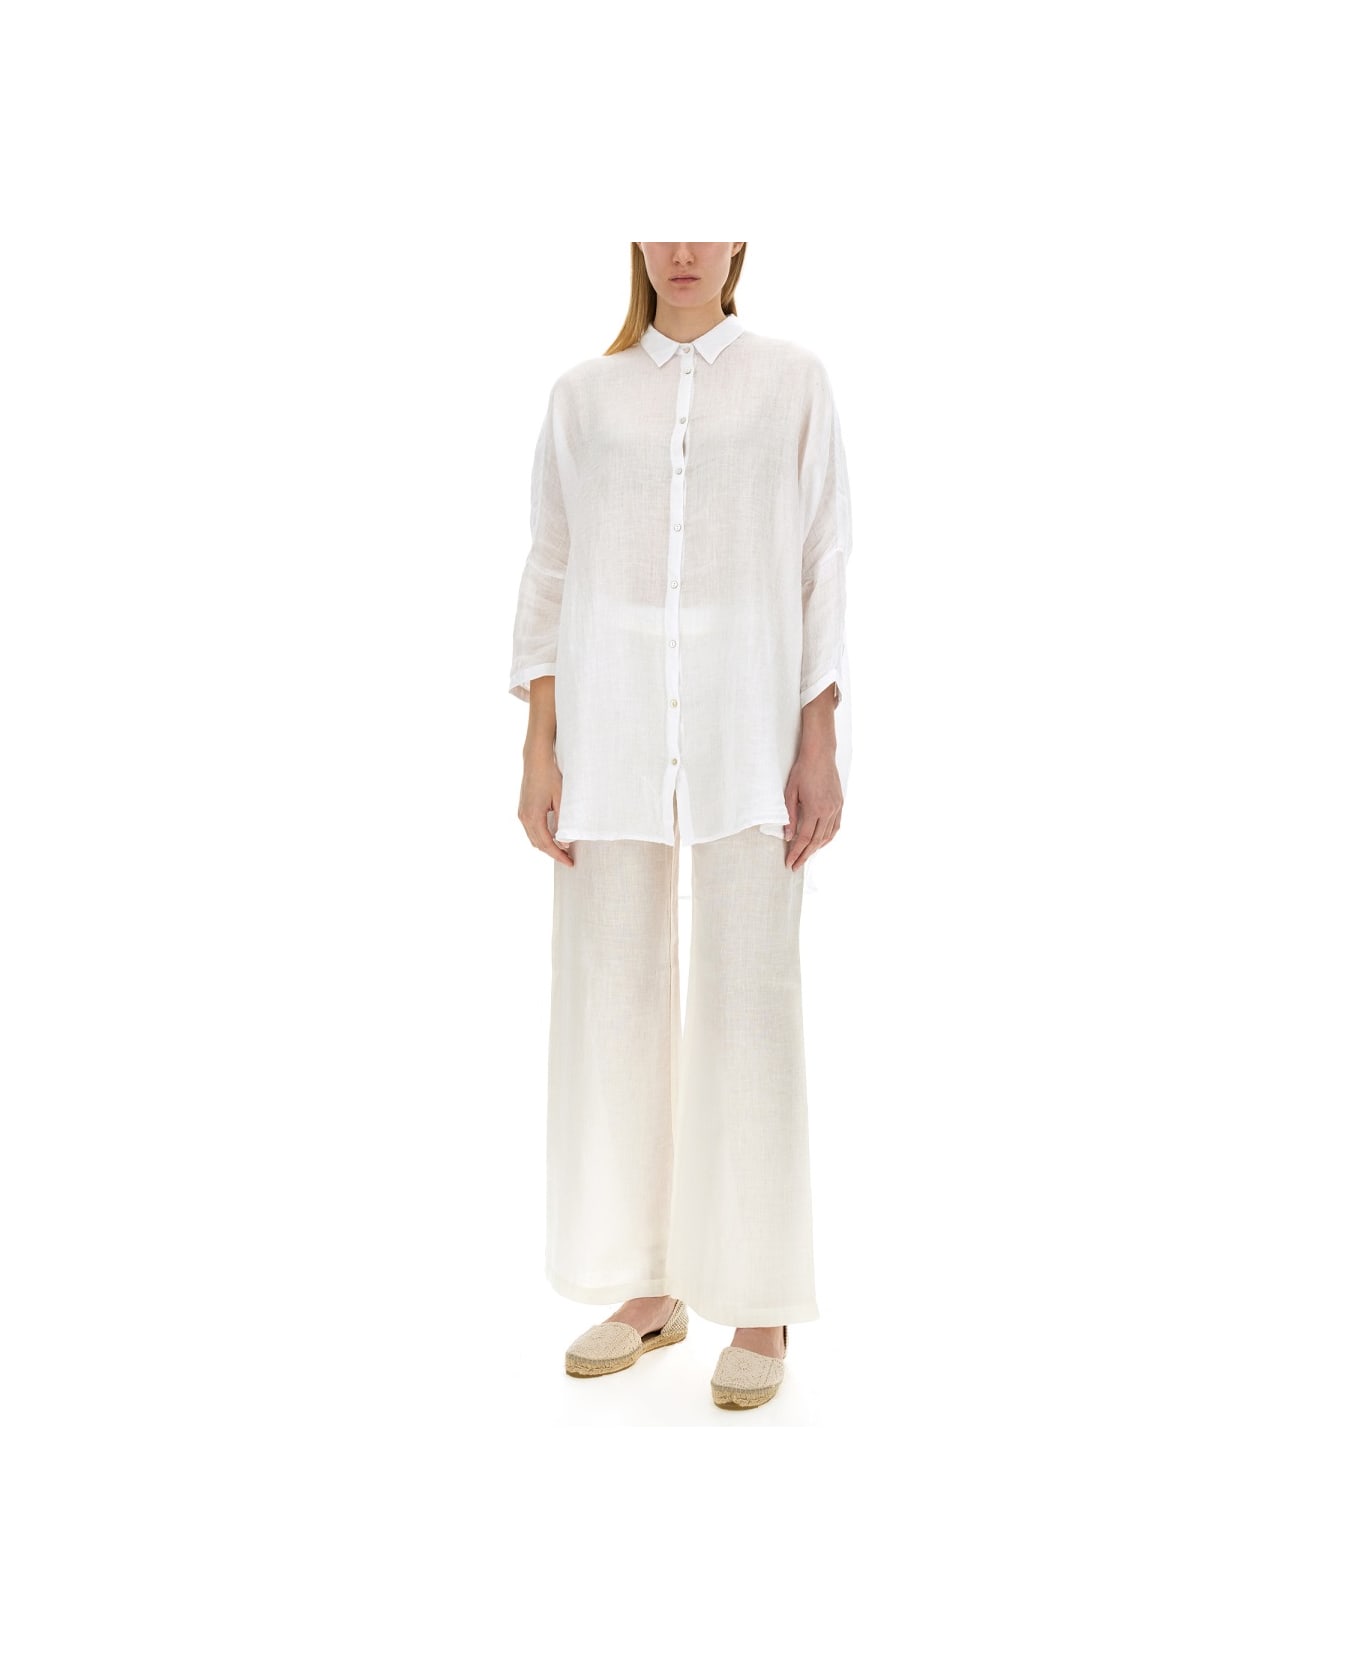 120% Lino Linen Shirt - WHITE